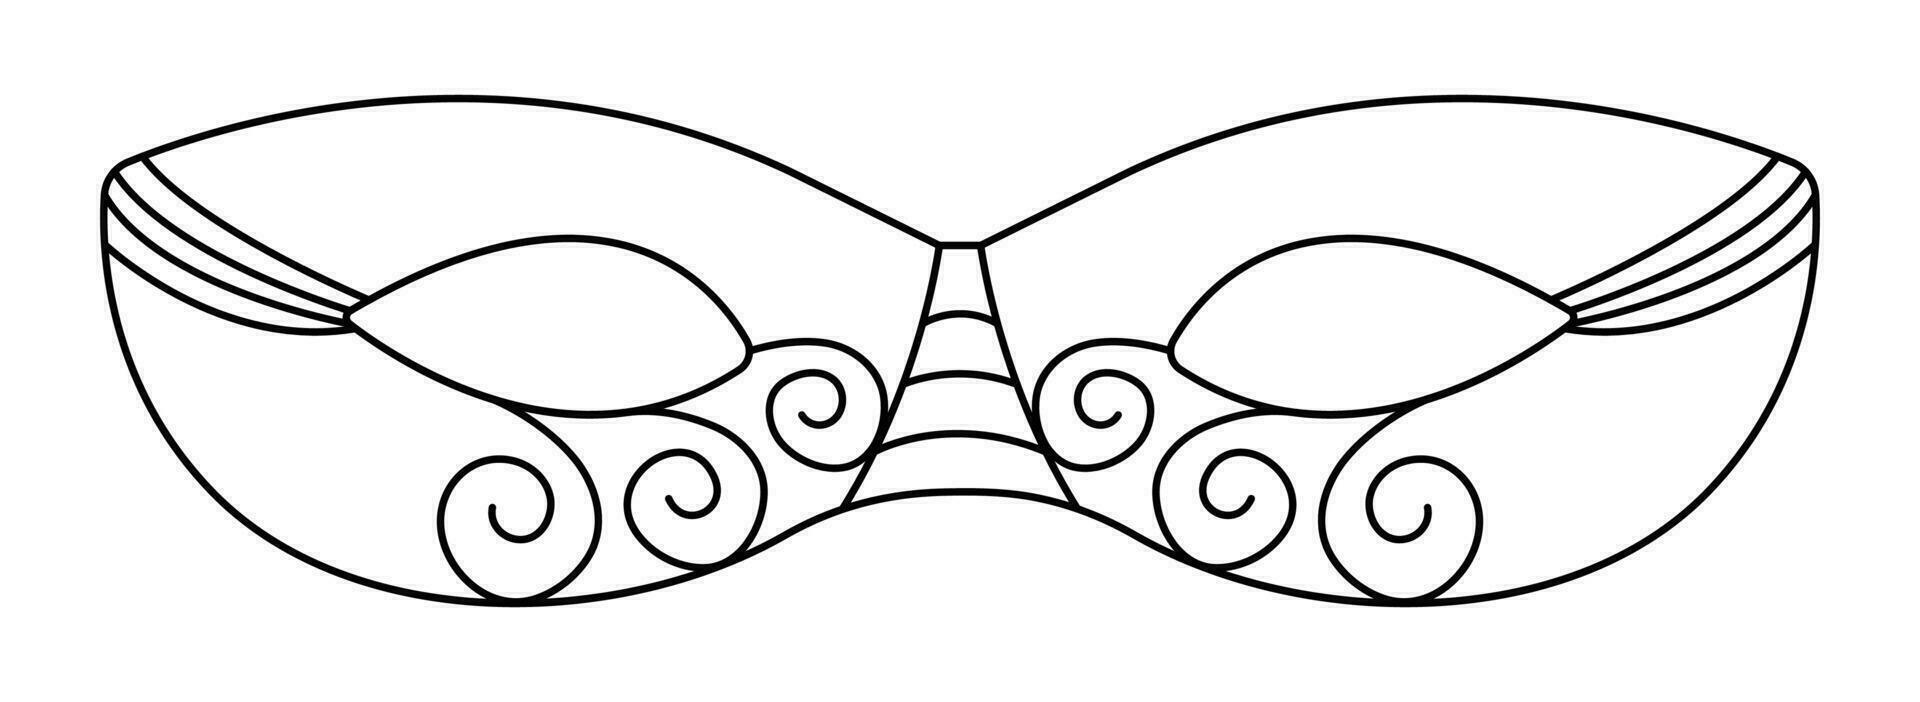 svart linje maskerad mask för purim Semester, vektor svartvit illustration